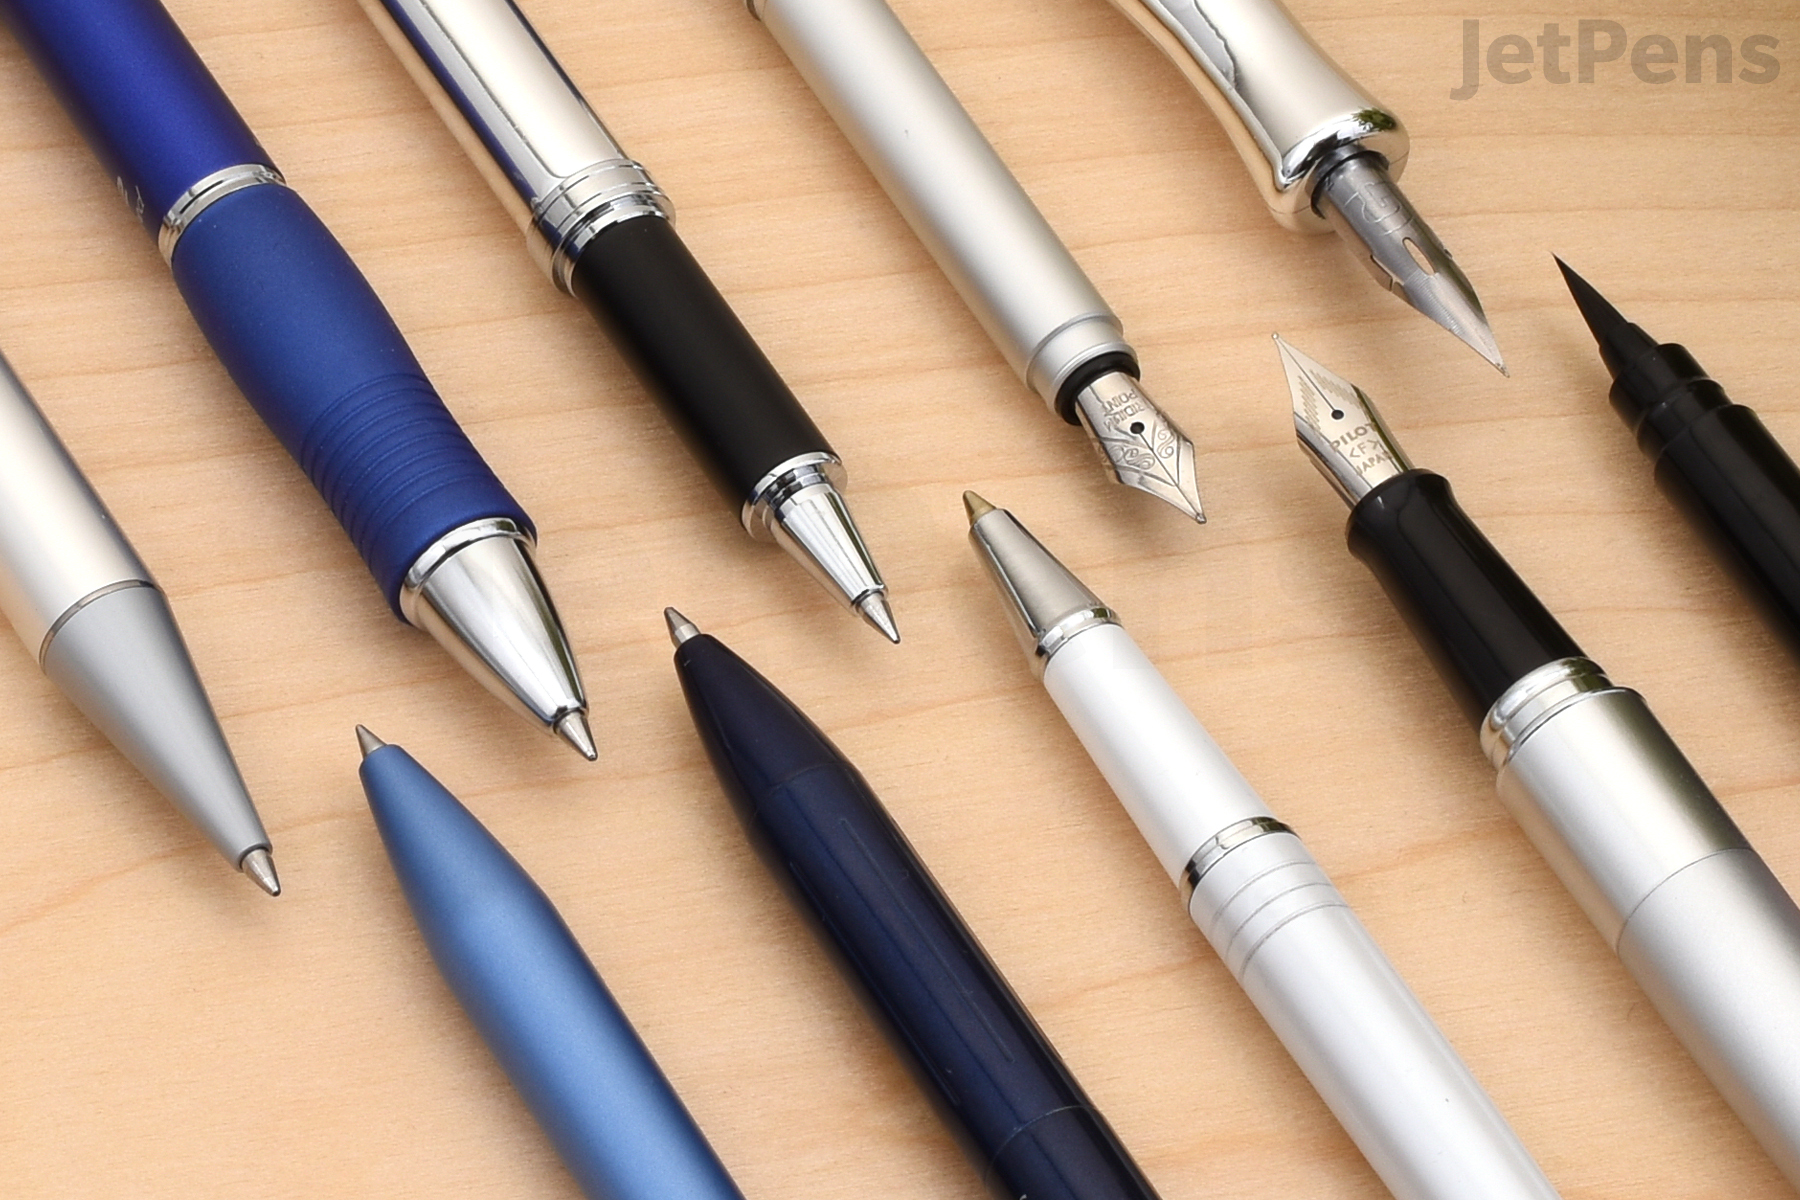 Pilot G2 Limited Premium Gel Ink Pen, Fine Point, Matte Black Barrel, Black Ink, 1 Count